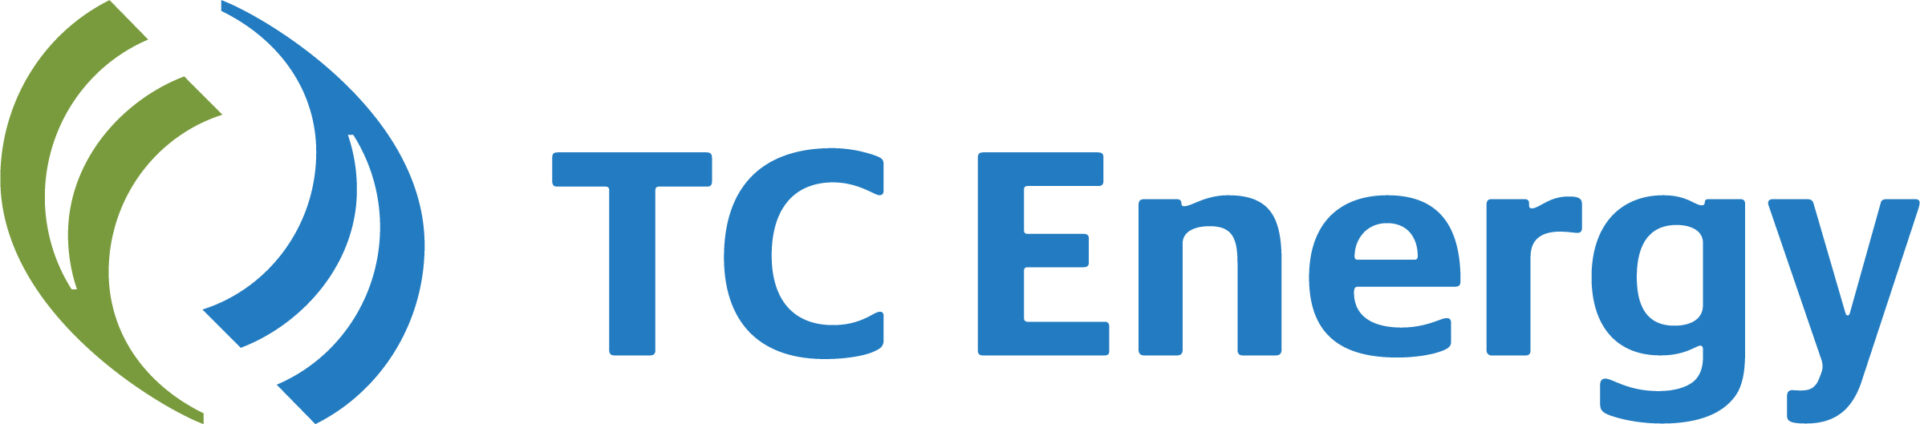 TC Energy Logo - English.